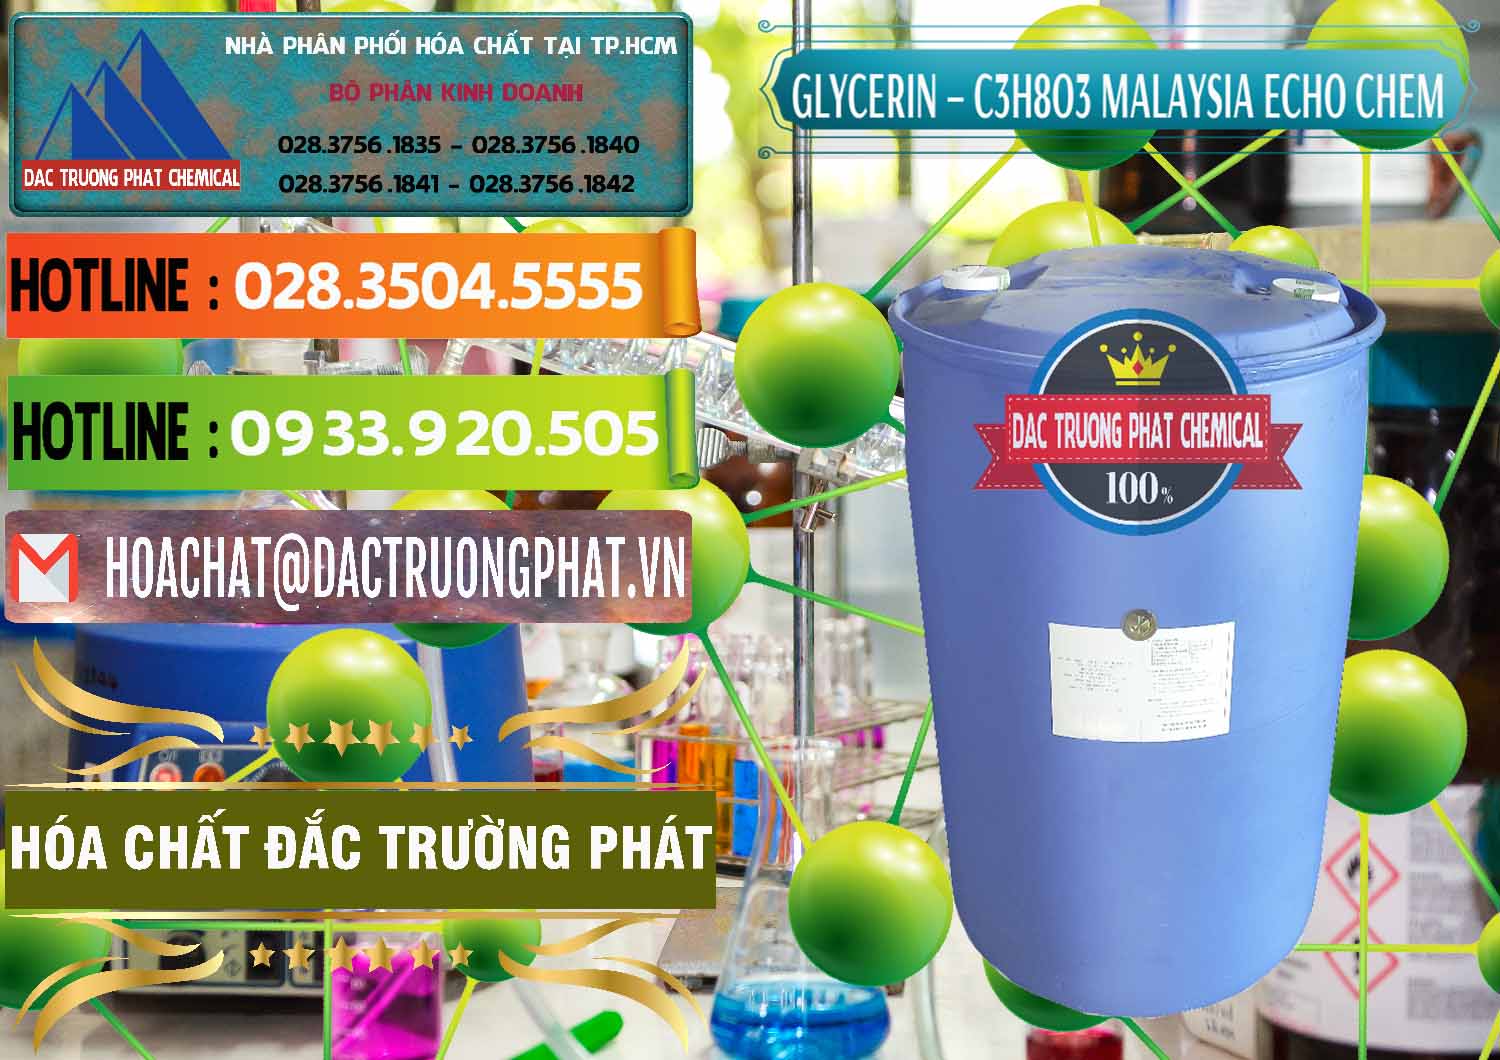 Công ty cung cấp _ bán C3H8O3 - Glycerin 99.7% Echo Chem Malaysia - 0273 - Công ty chuyên phân phối & bán hóa chất tại TP.HCM - cungcaphoachat.com.vn